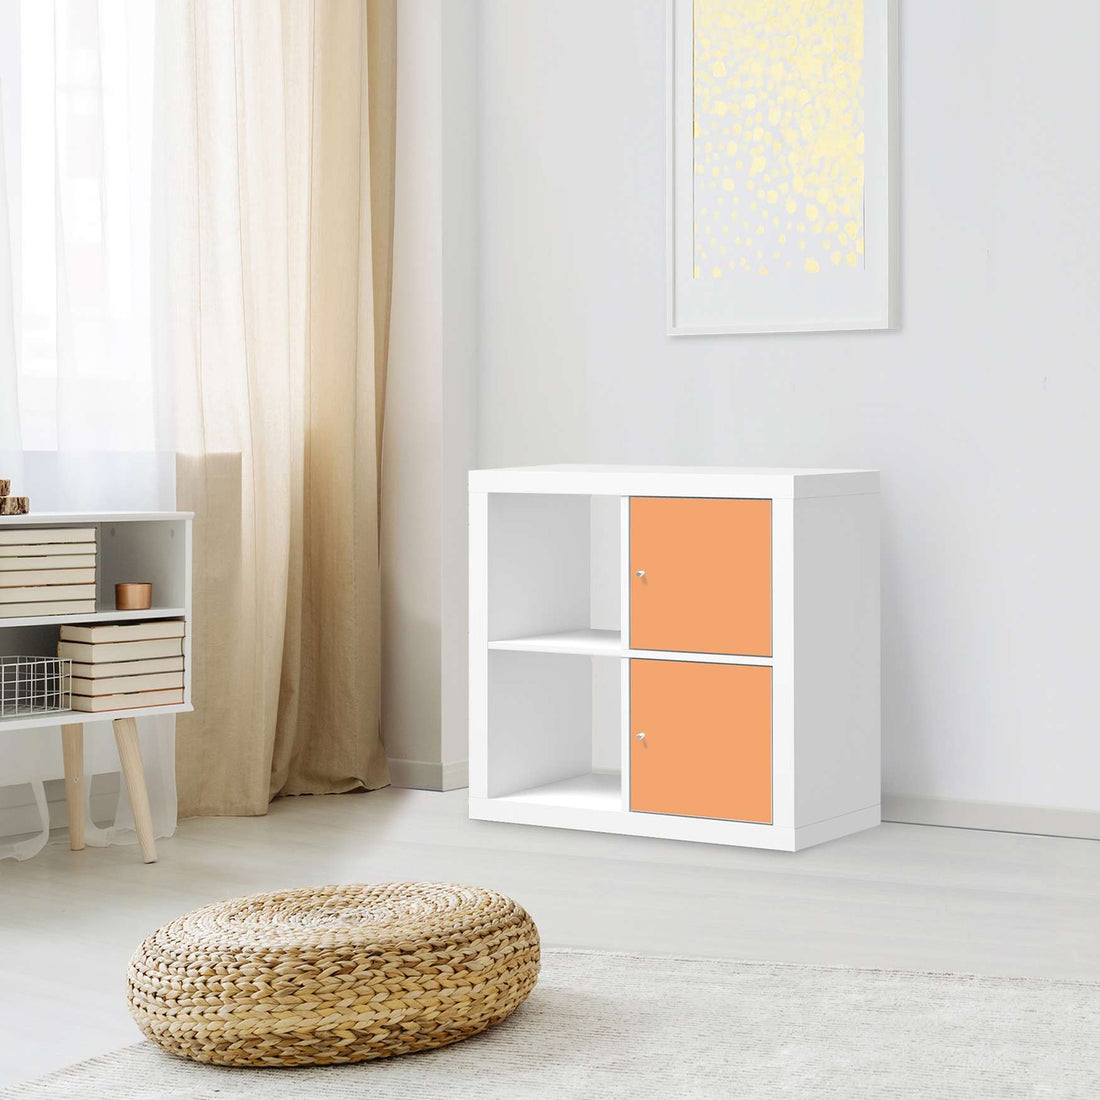 Klebefolie für Möbel Orange Light - IKEA Expedit Regal 2 Türen Hoch - Wohnzimmer